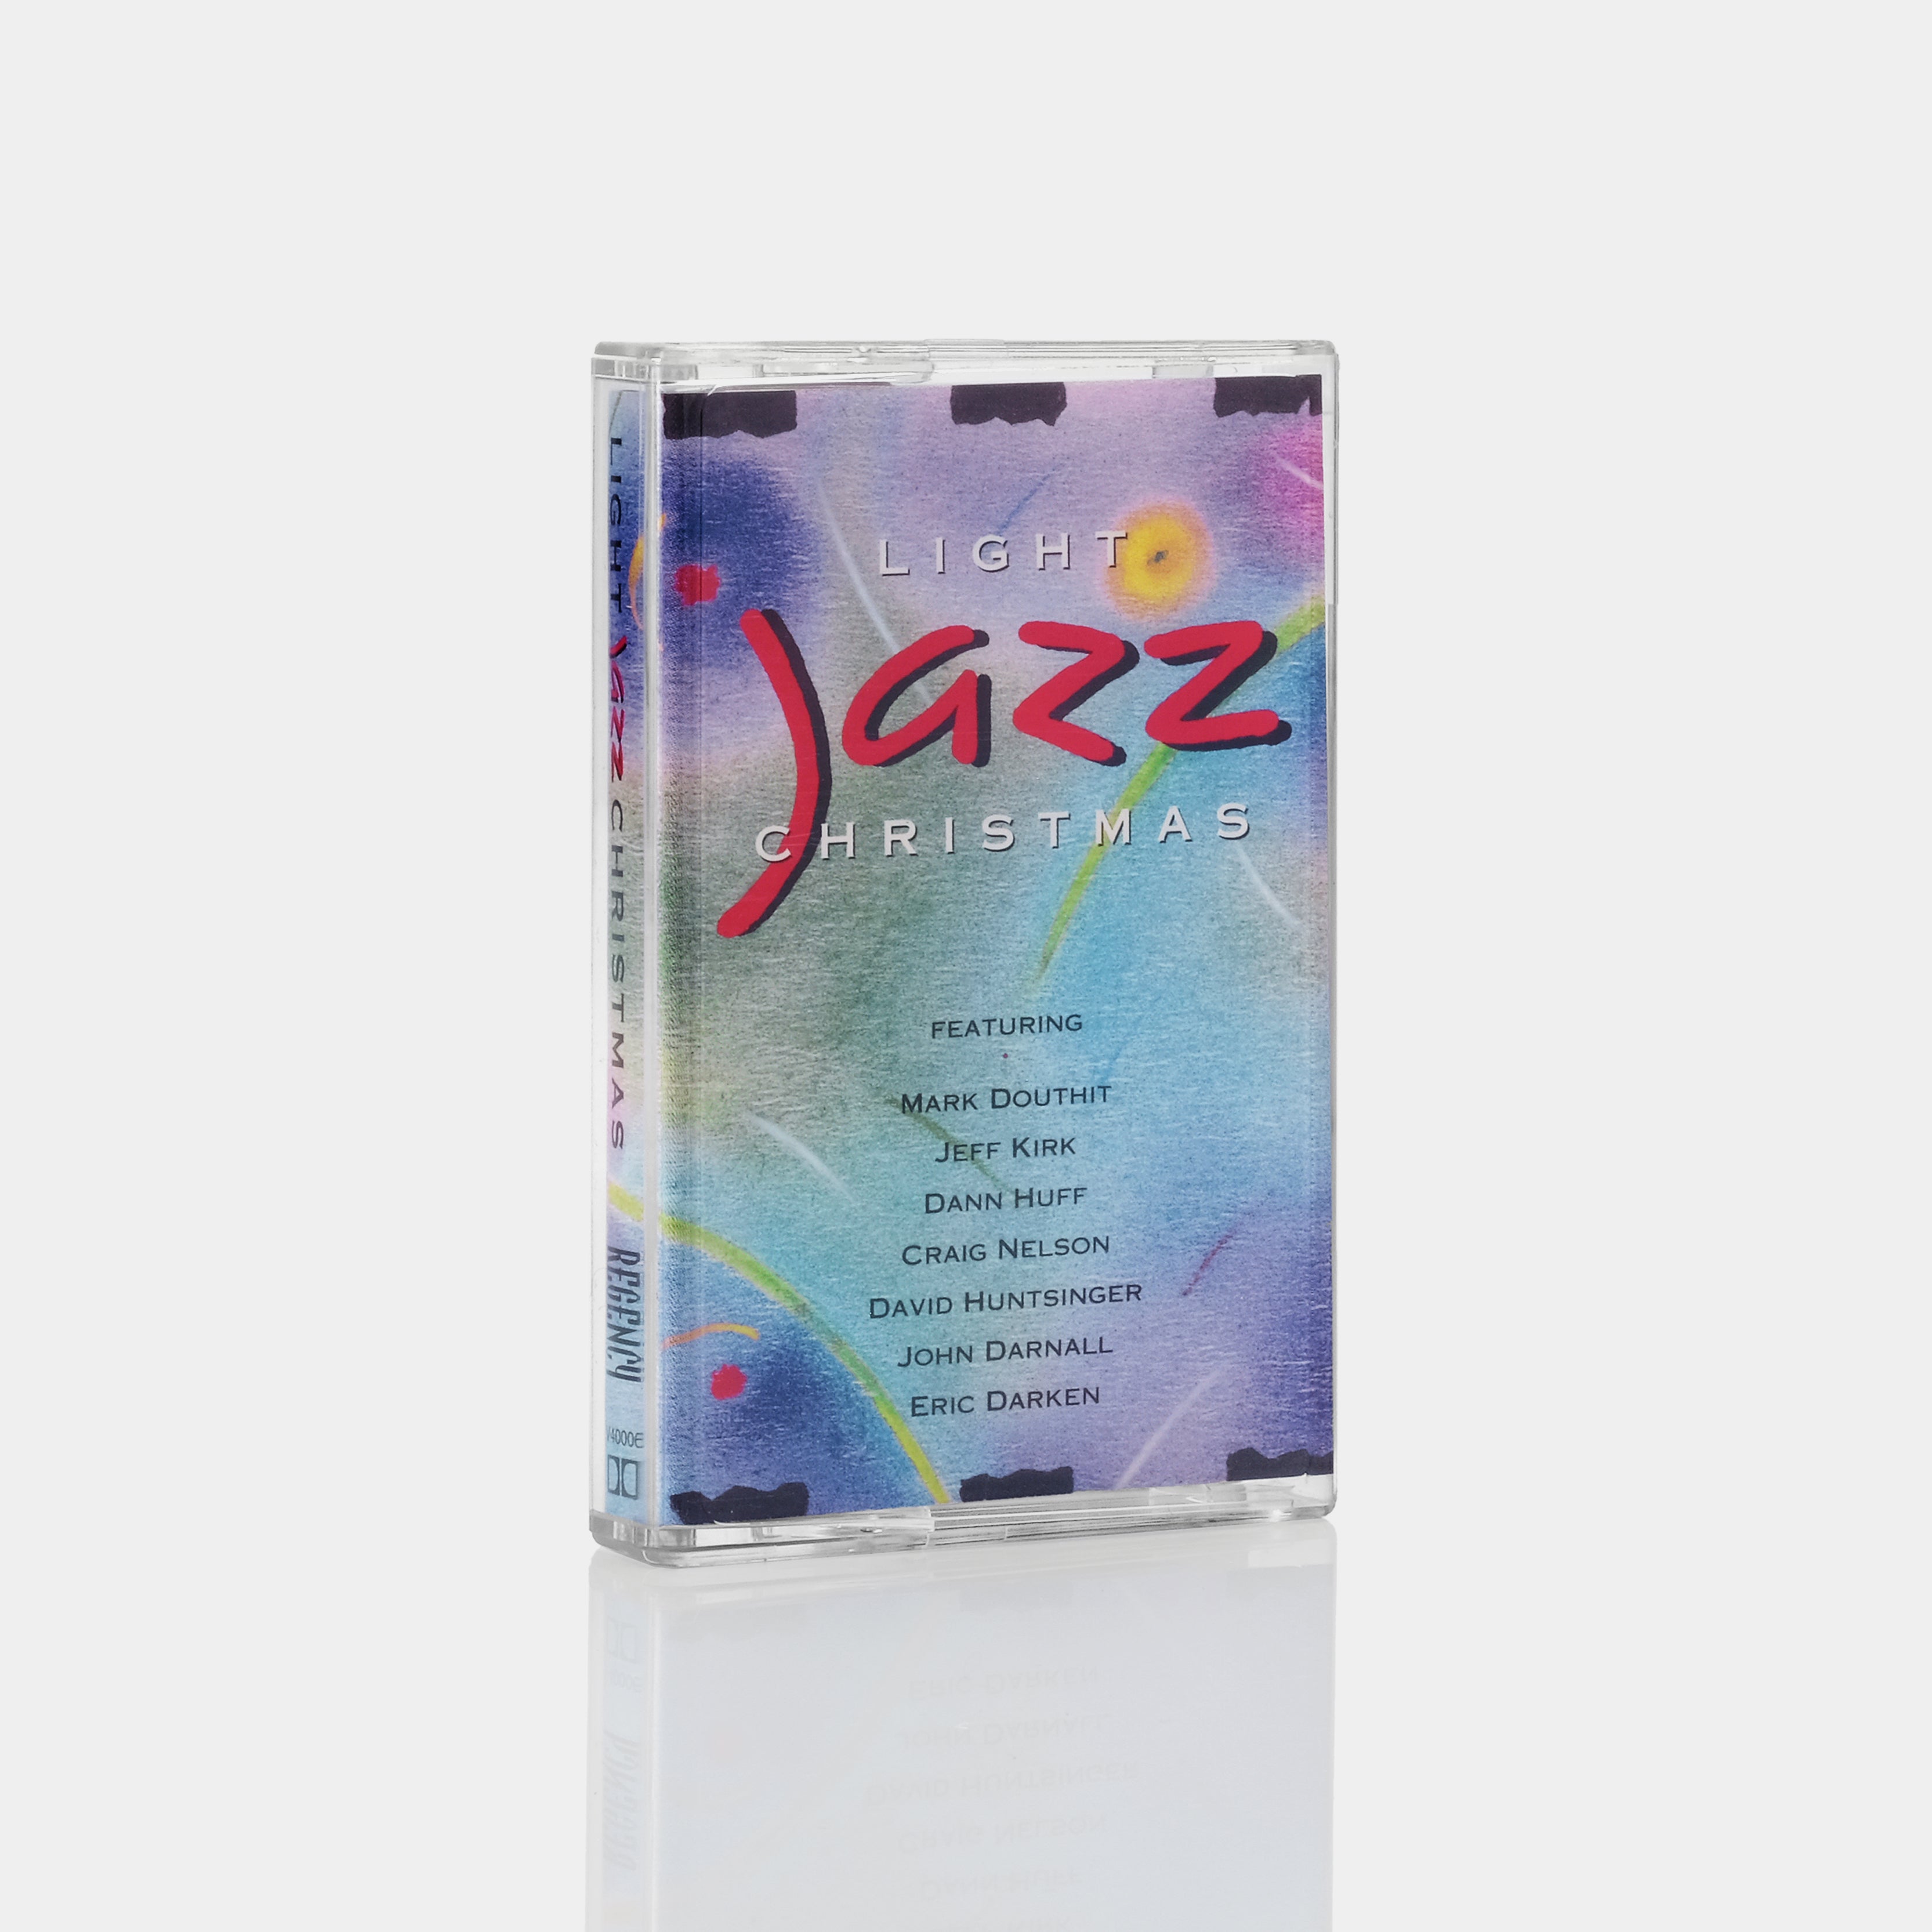 Light Jazz Christmas Cassette Tape